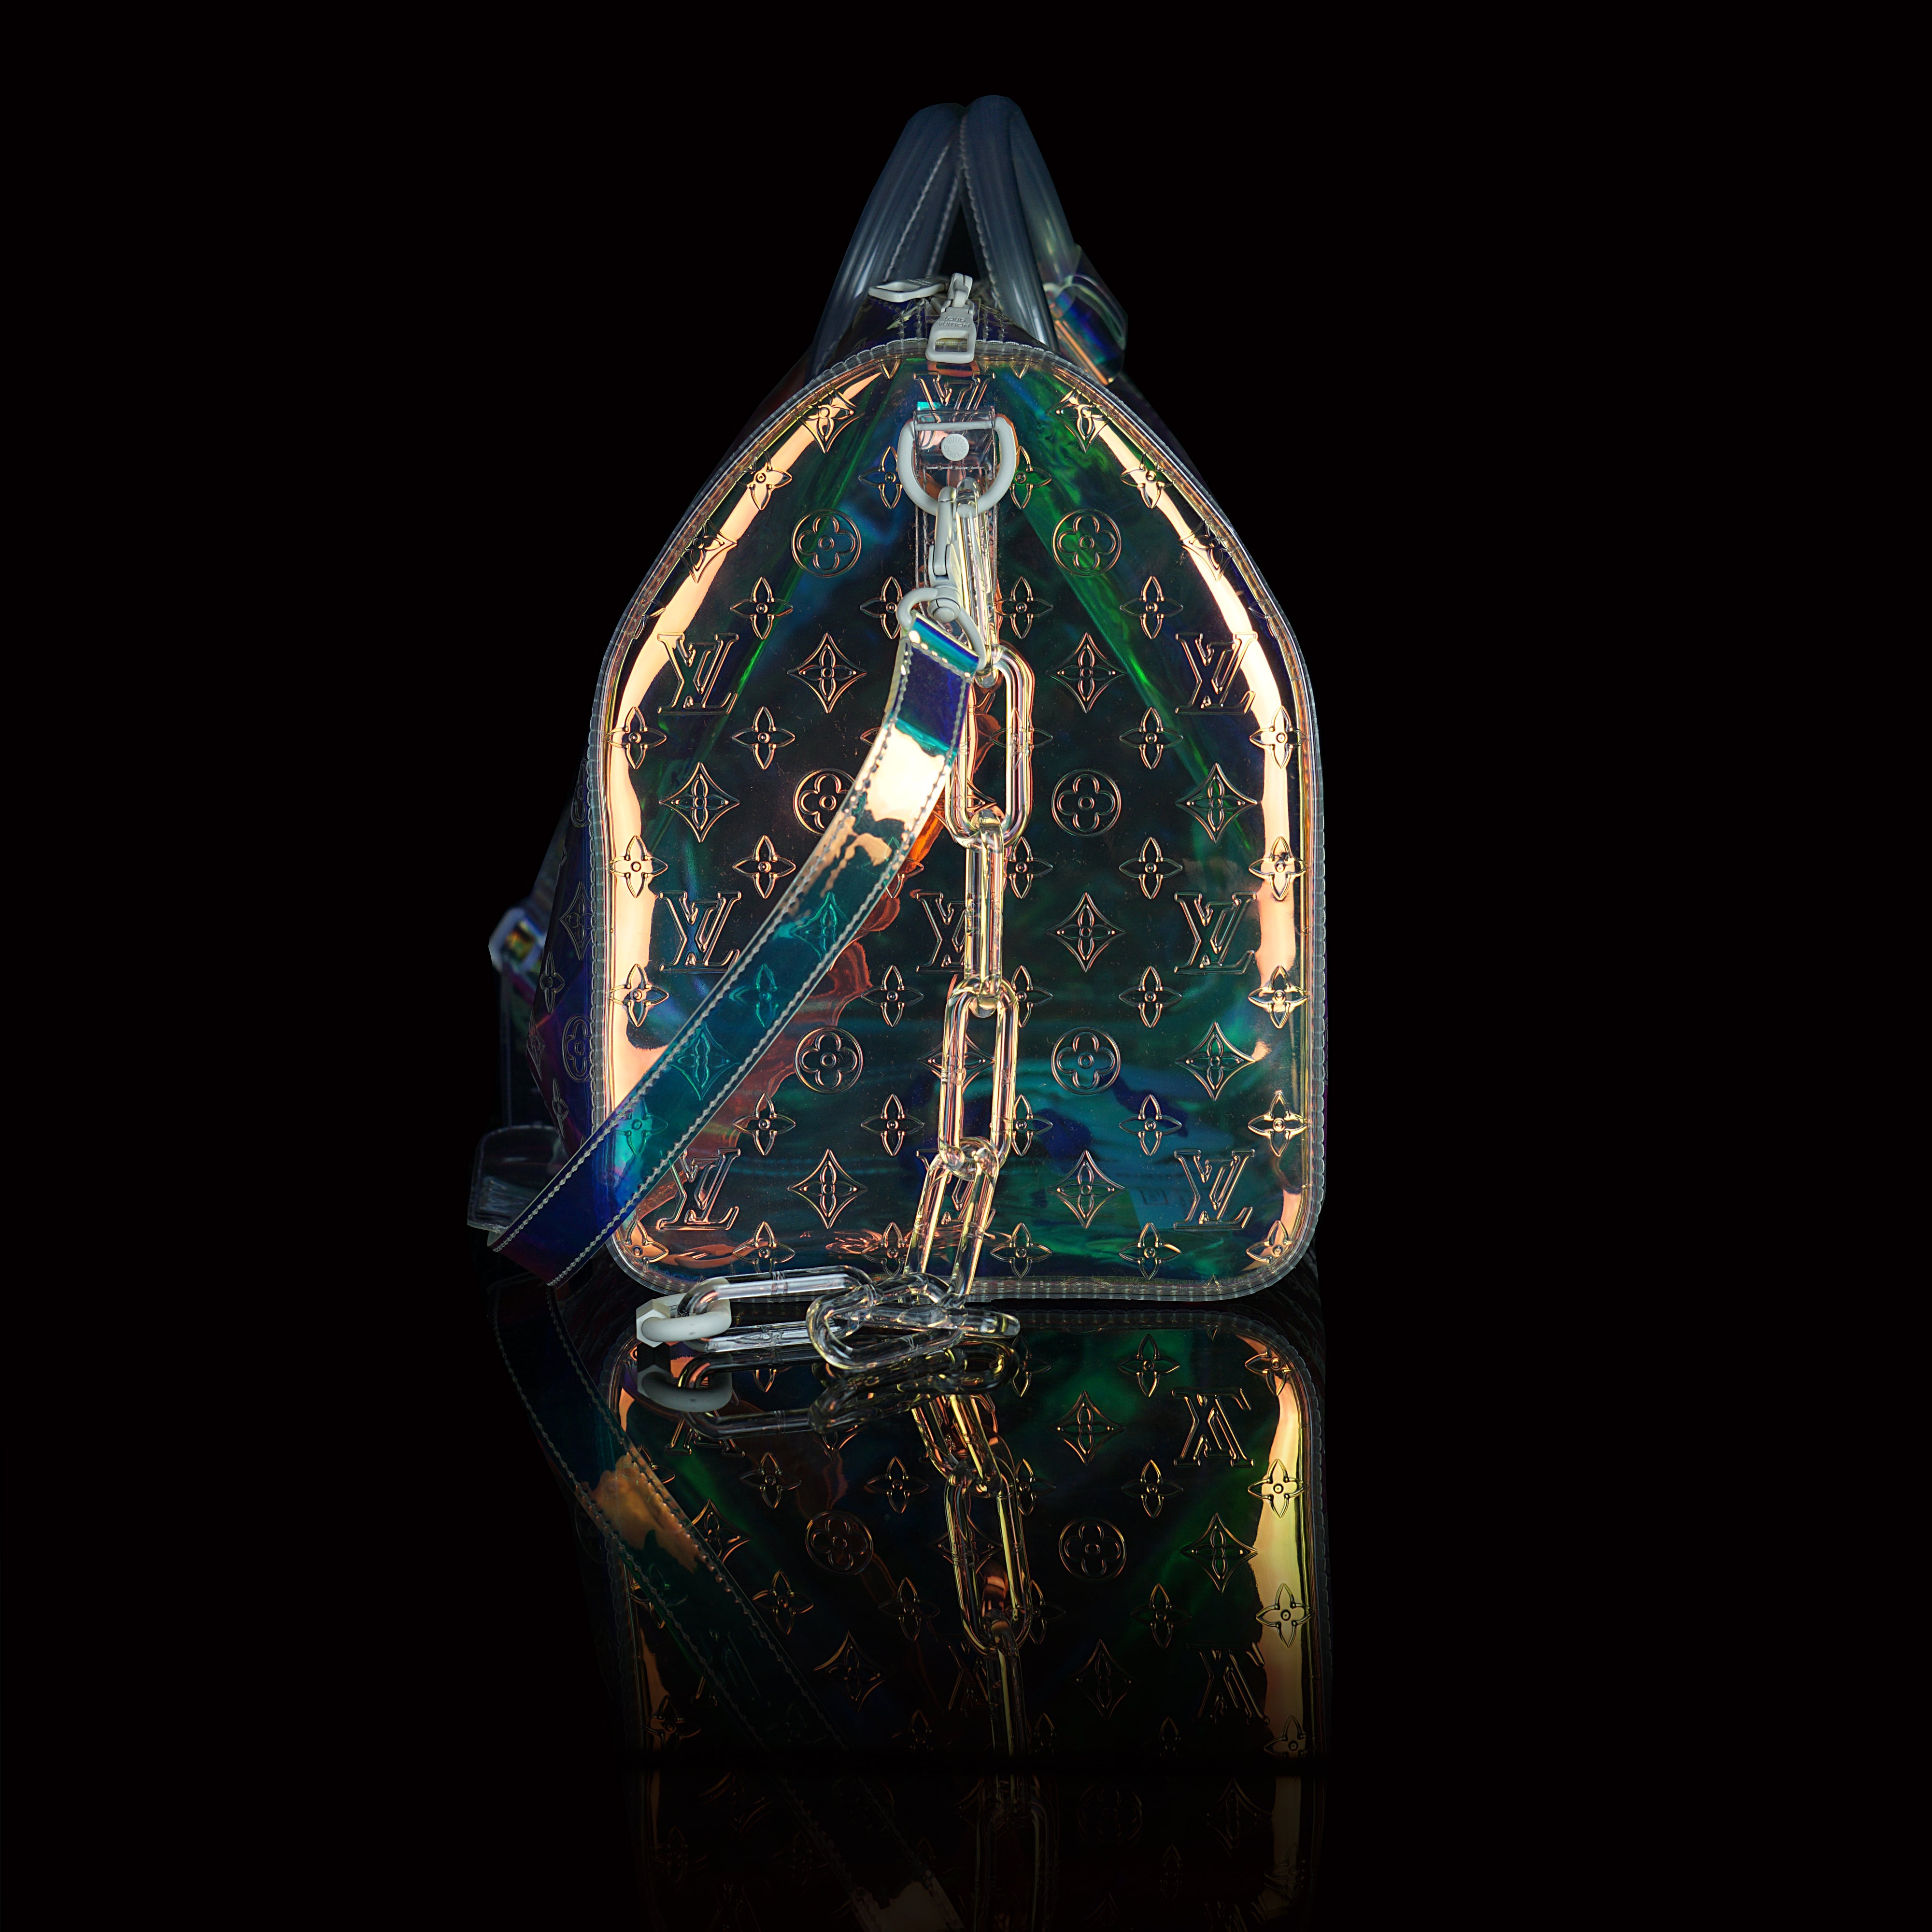 Virgil Abloh for Louis Vuitton Keepall Bandoulière 50 Prism